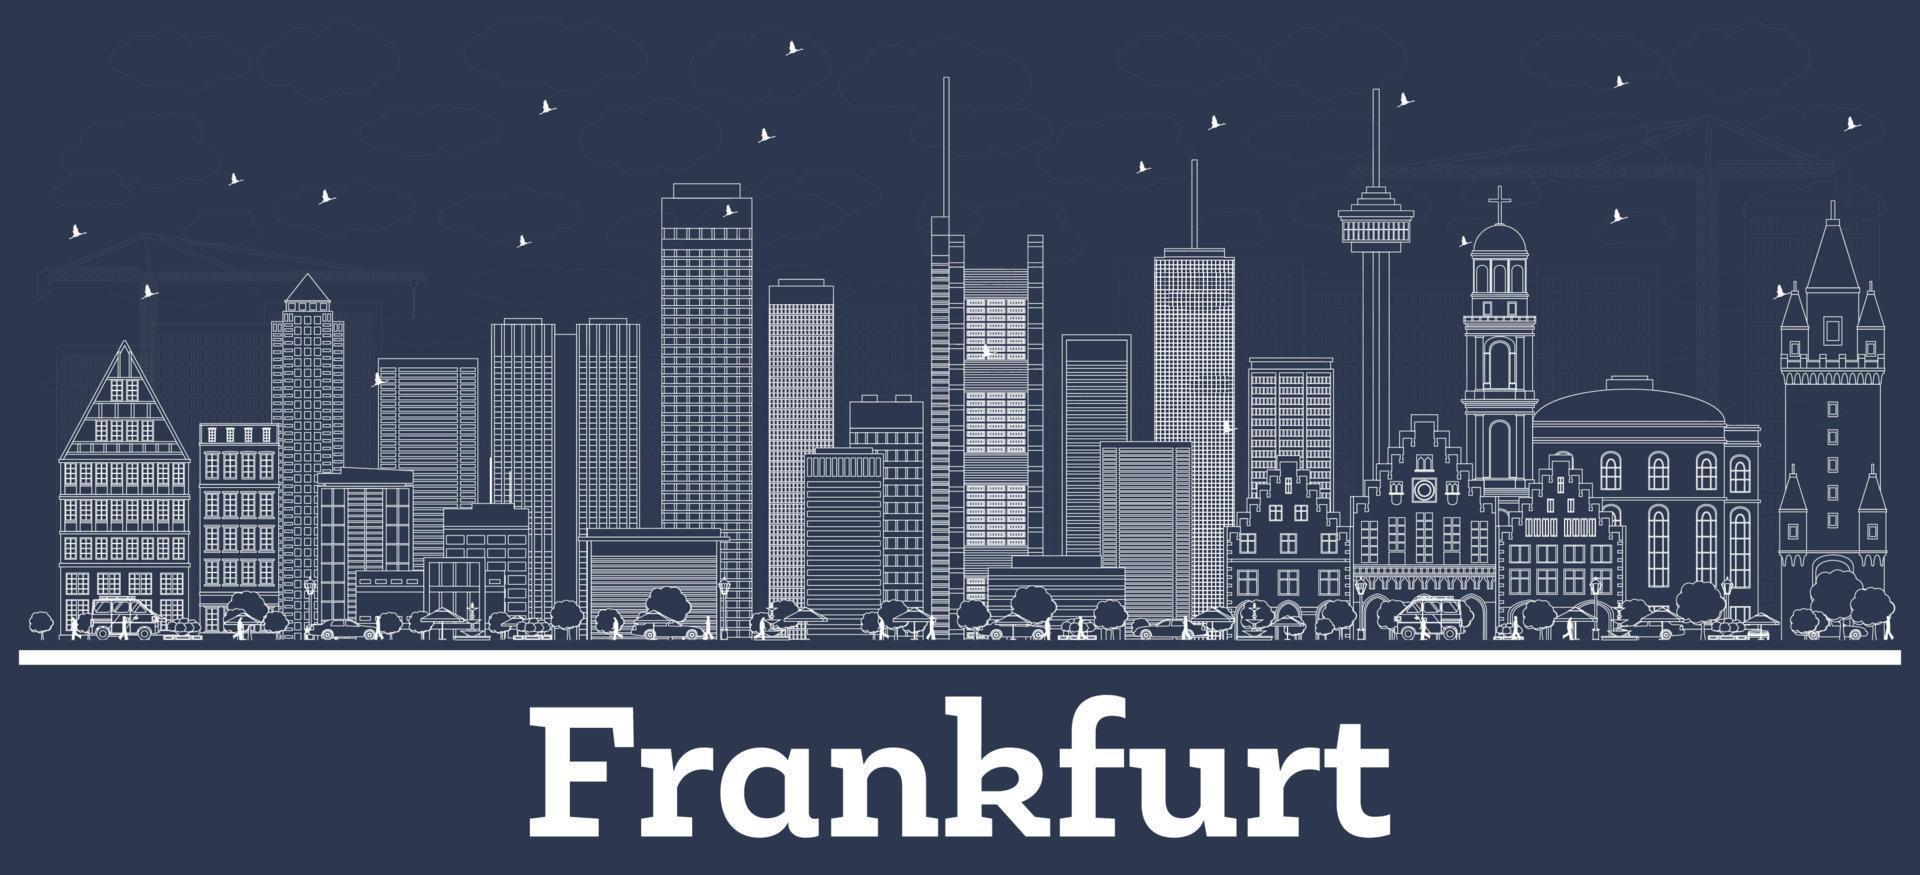 delineie o horizonte da cidade de frankfurt alemanha com edifícios brancos. vetor